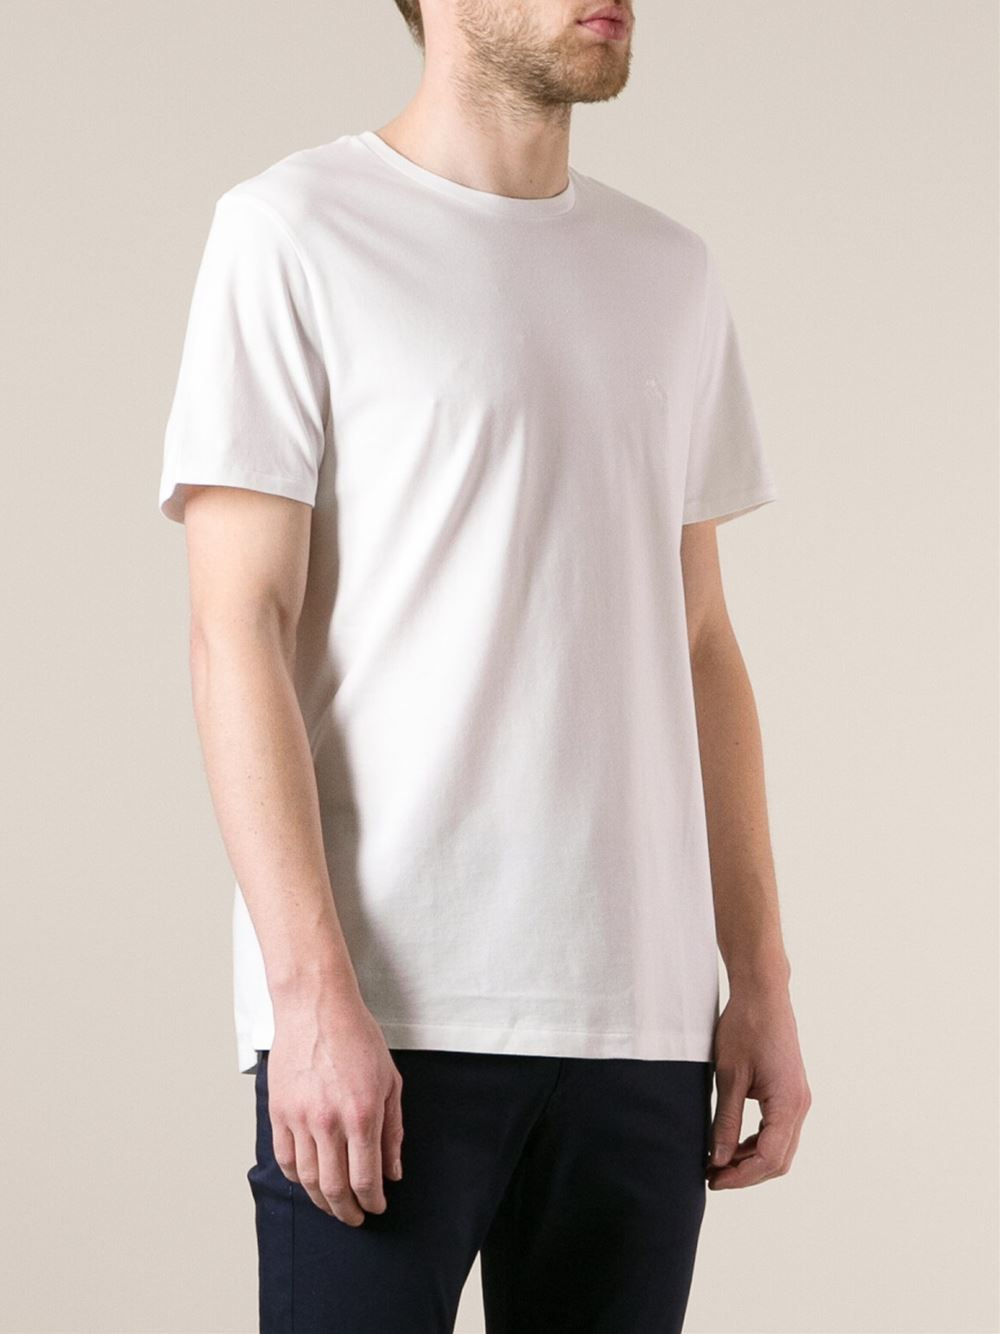 Lyst - Burberry Brit Short Sleeve T-Shirt in White for Men